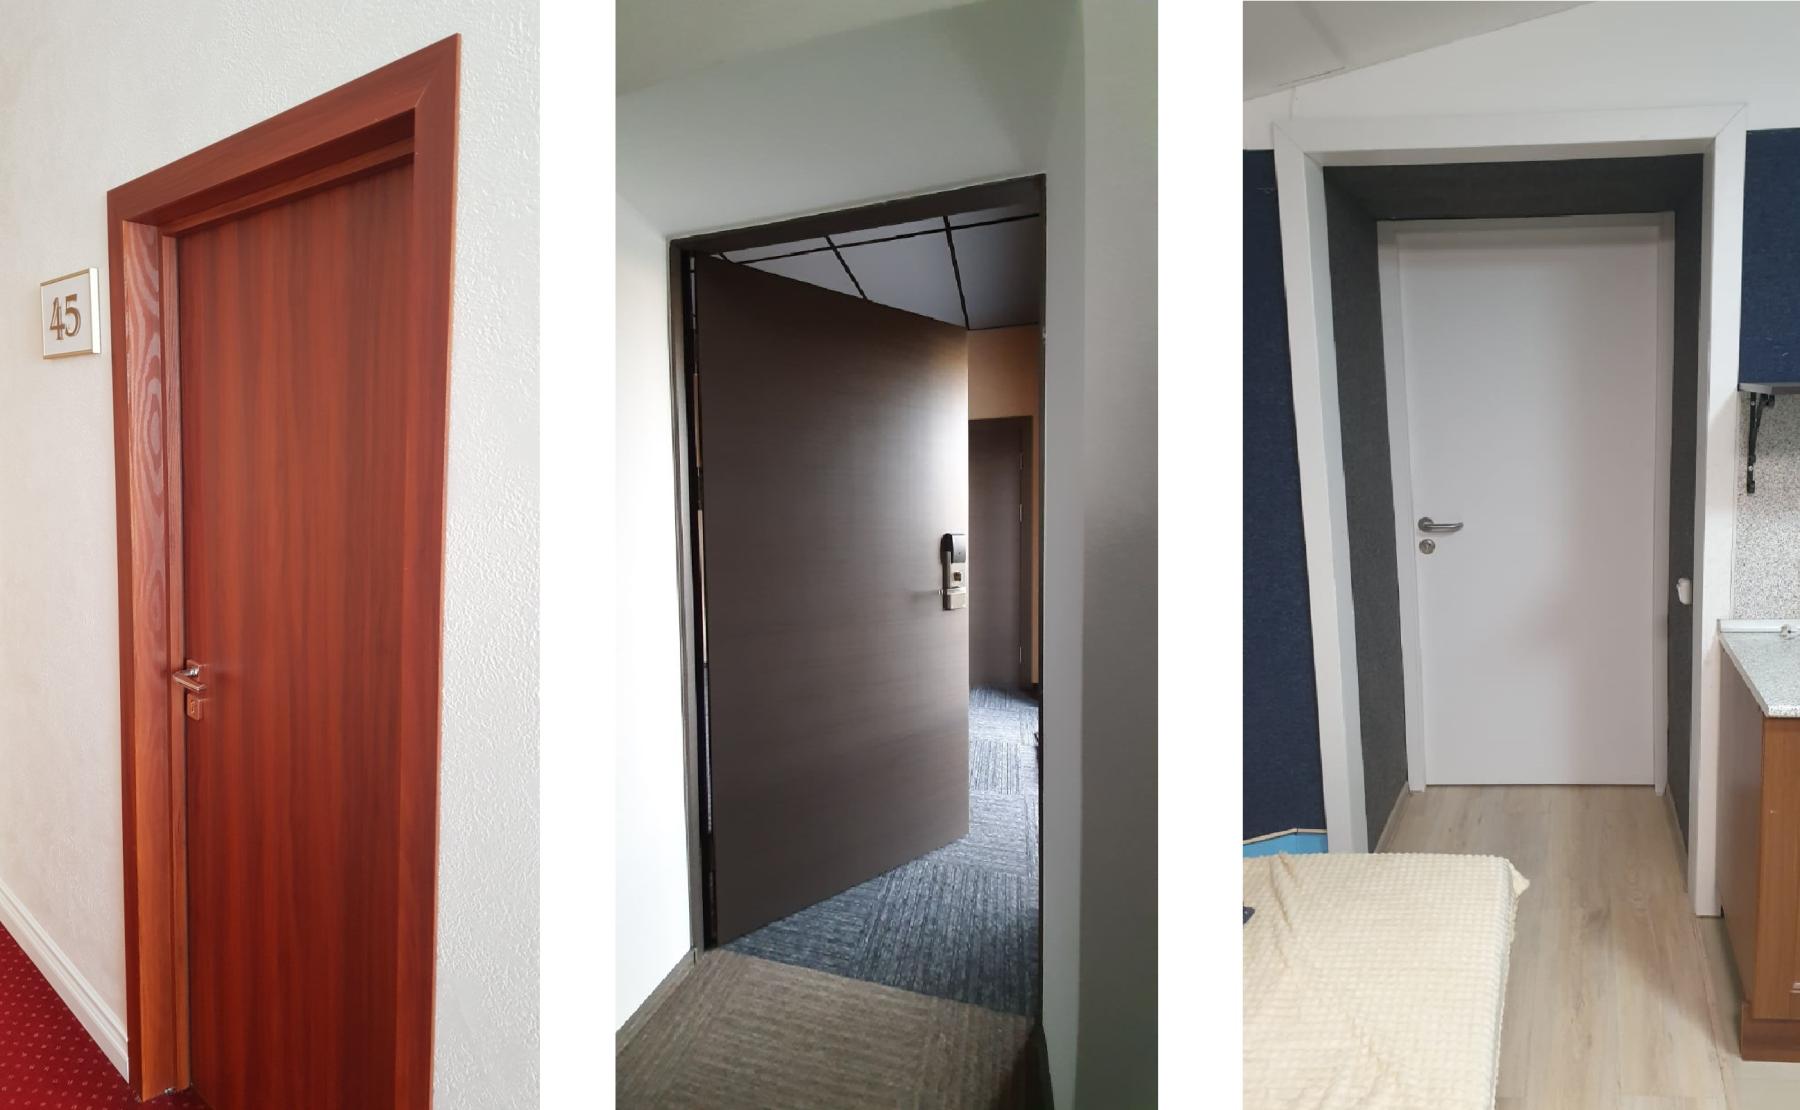 Двери производства Ostium Doors, установленные в мотелях, хостелах, гостевых домах